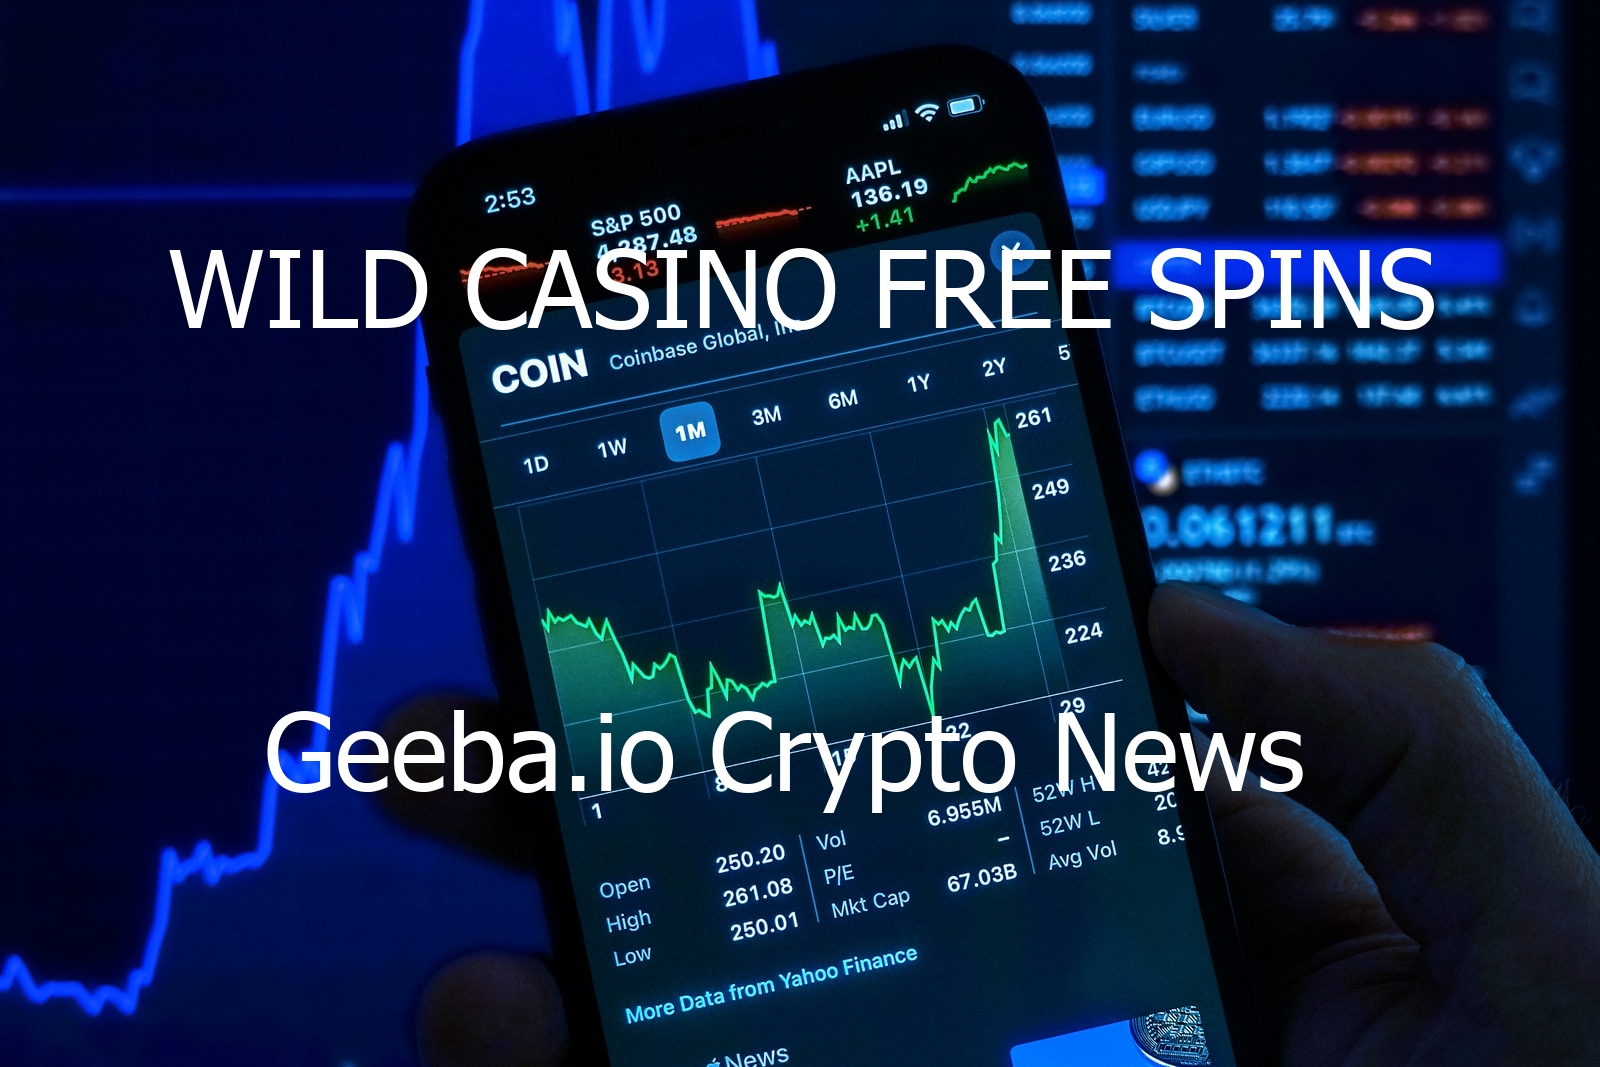 wild casino free spins 3927